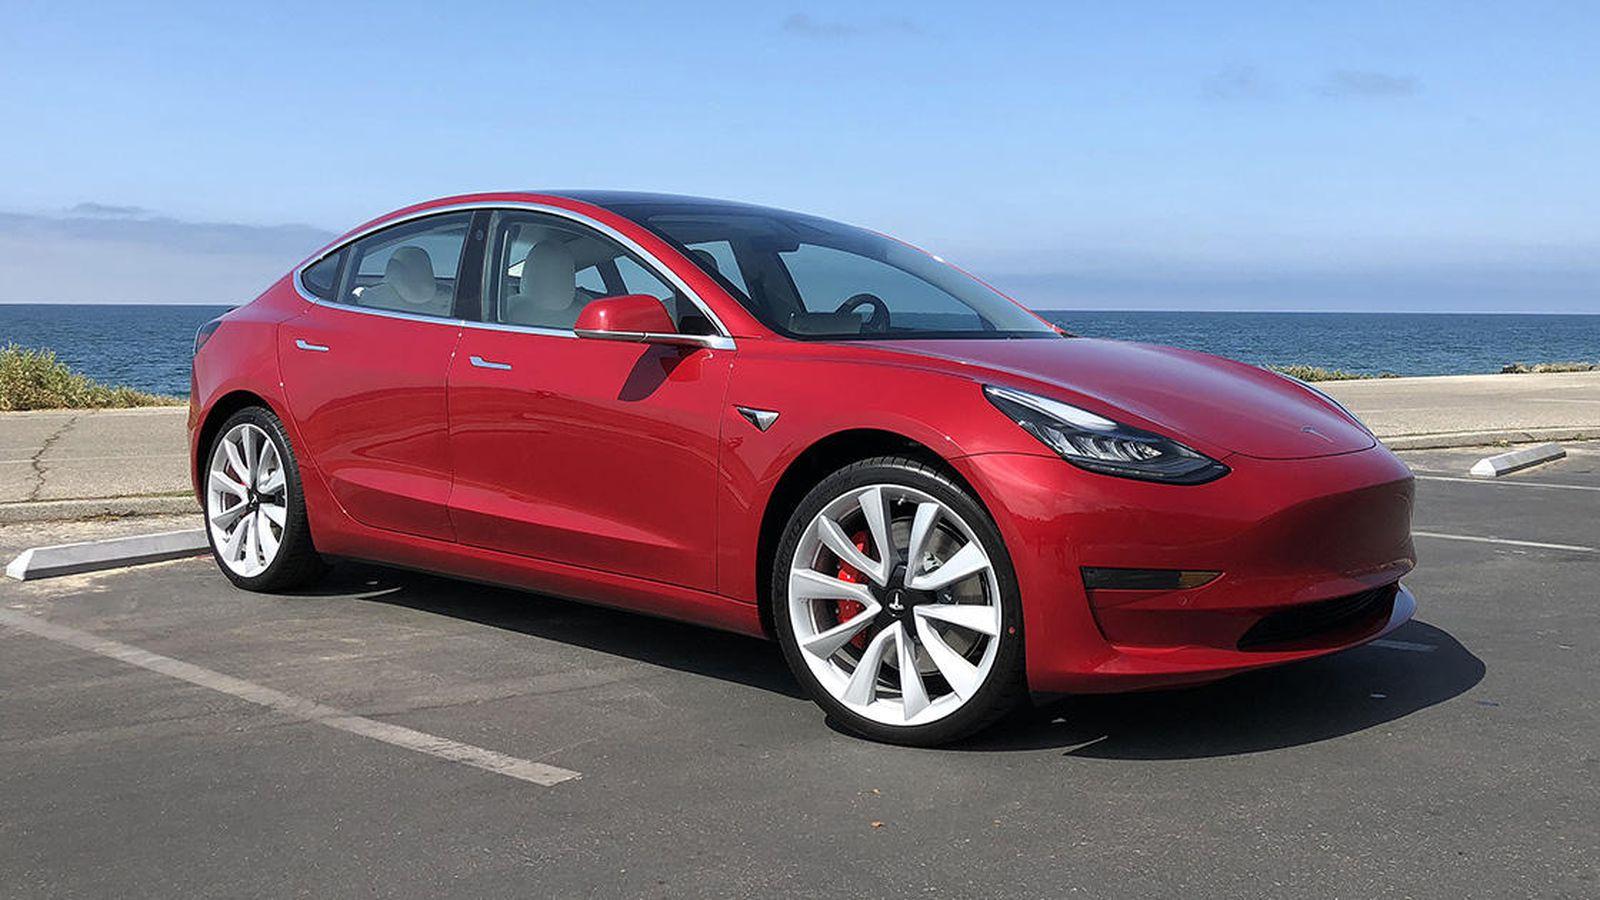 Electric sliding: We test Tesla's new 'Track Mode' on Model